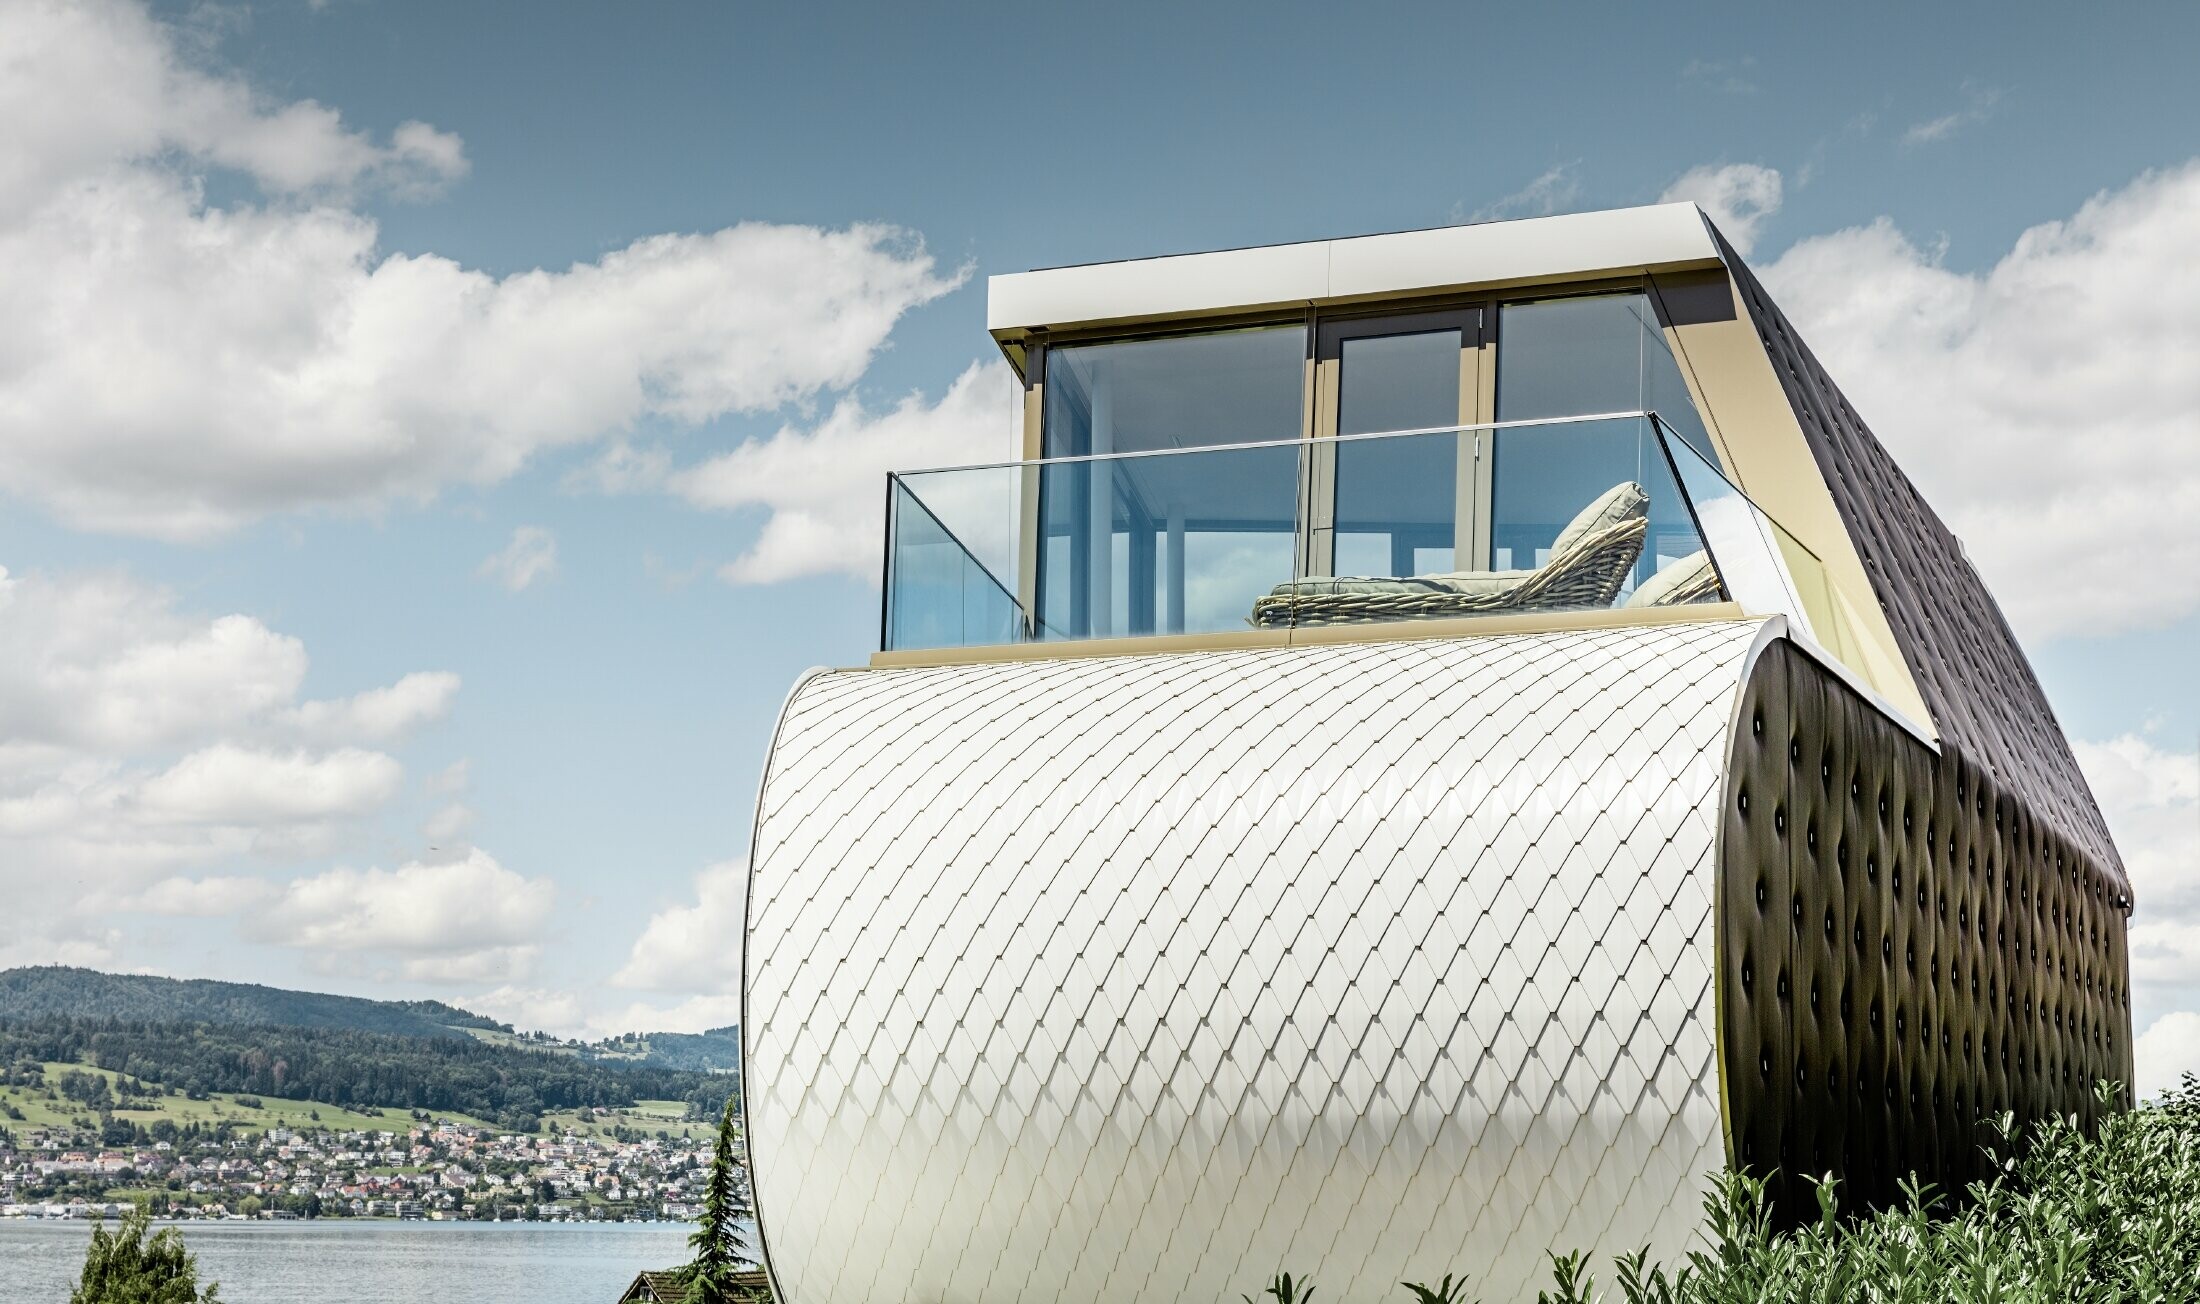 Bilde fra siden av det fremragende Flexhouse, designet av arkitekt Camenzind. Man kan se én av de buede ytterveggene kledd med PREFAs skjellete aluminiumsfasade i rent hvitt.